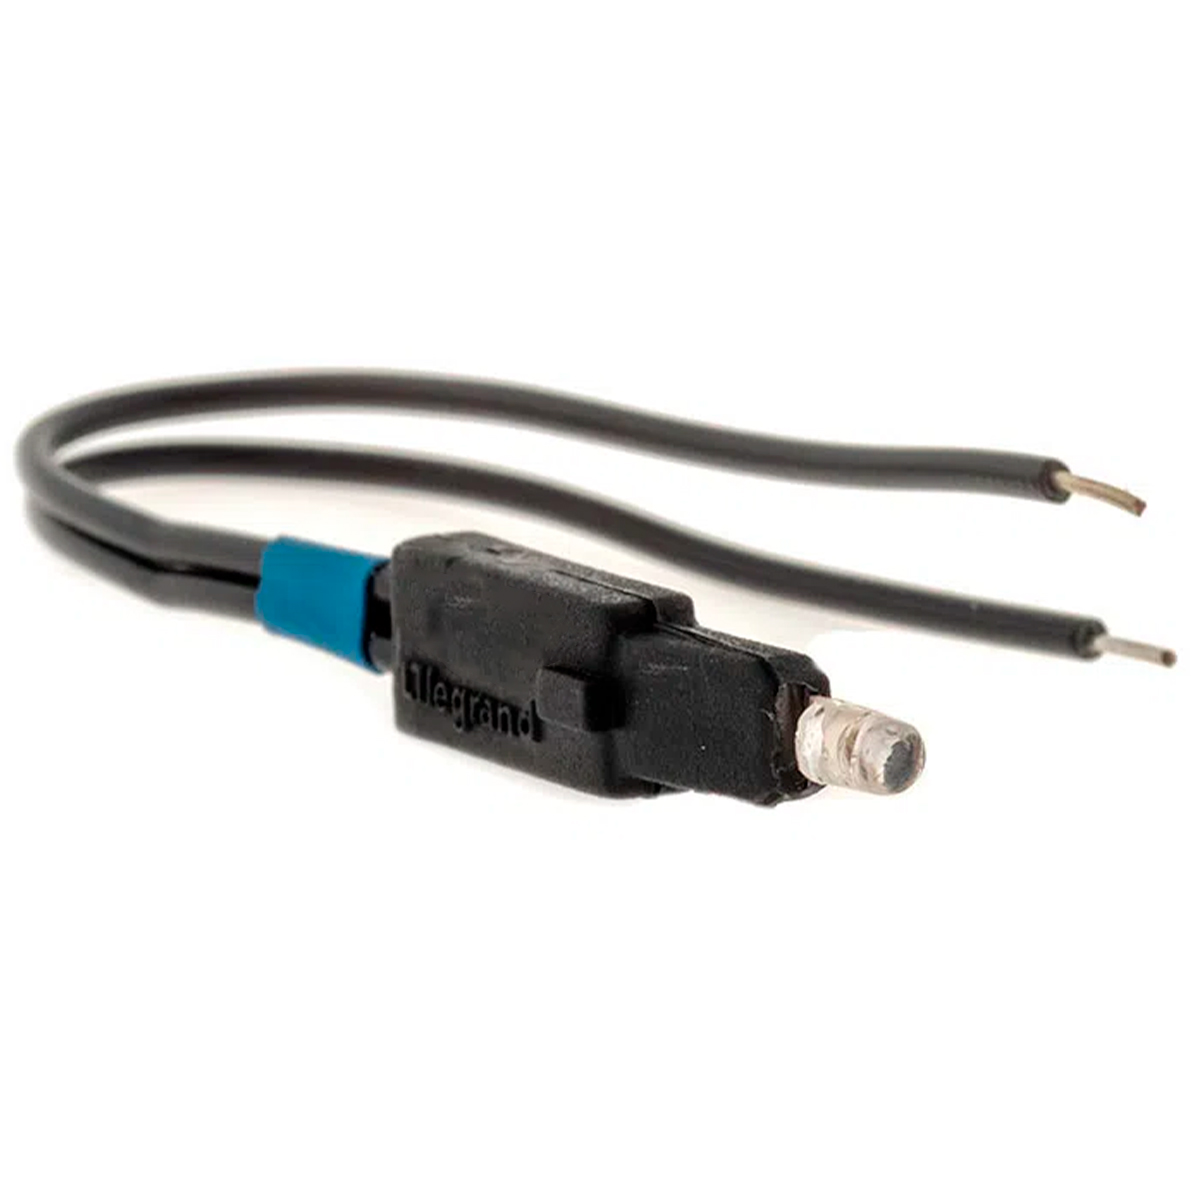 LED para Interruptores e Pulsadores Legrand Pial Plus+ - Azul - Bivolt - 615099NT